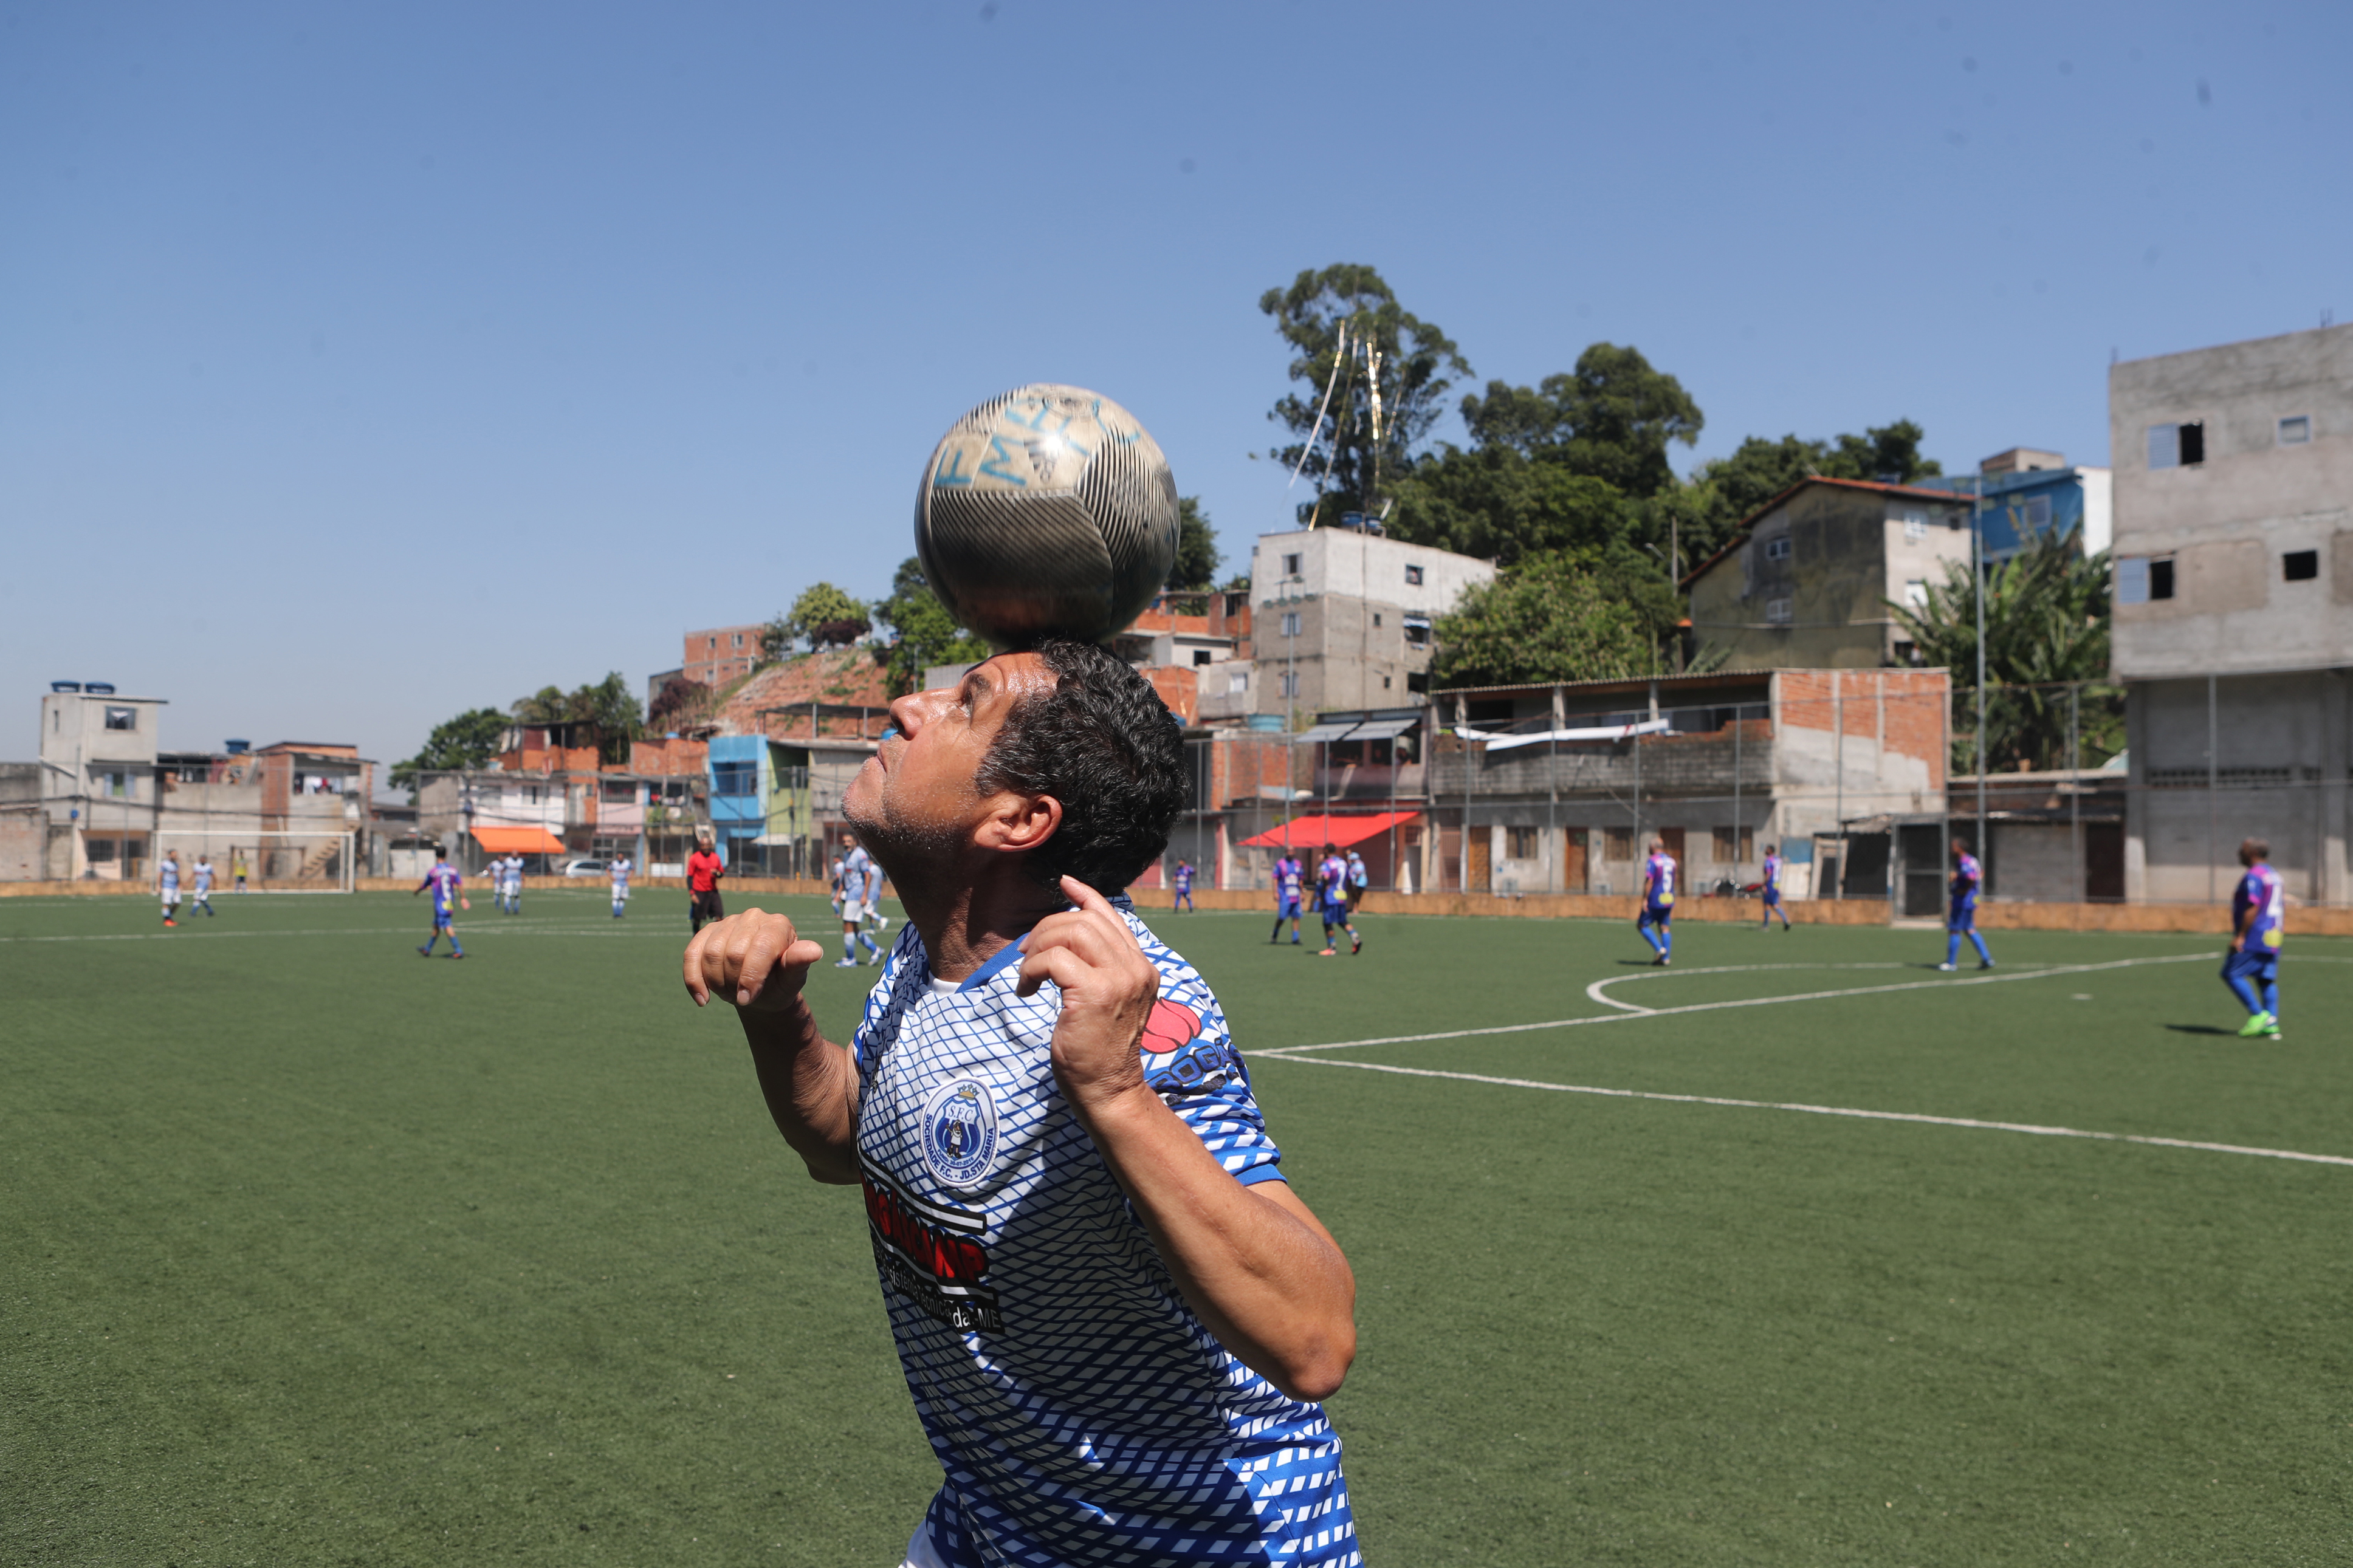 Sem preparo físico, futebol com amigos pode acabar em lesões - Notícias -  R7 Saúde